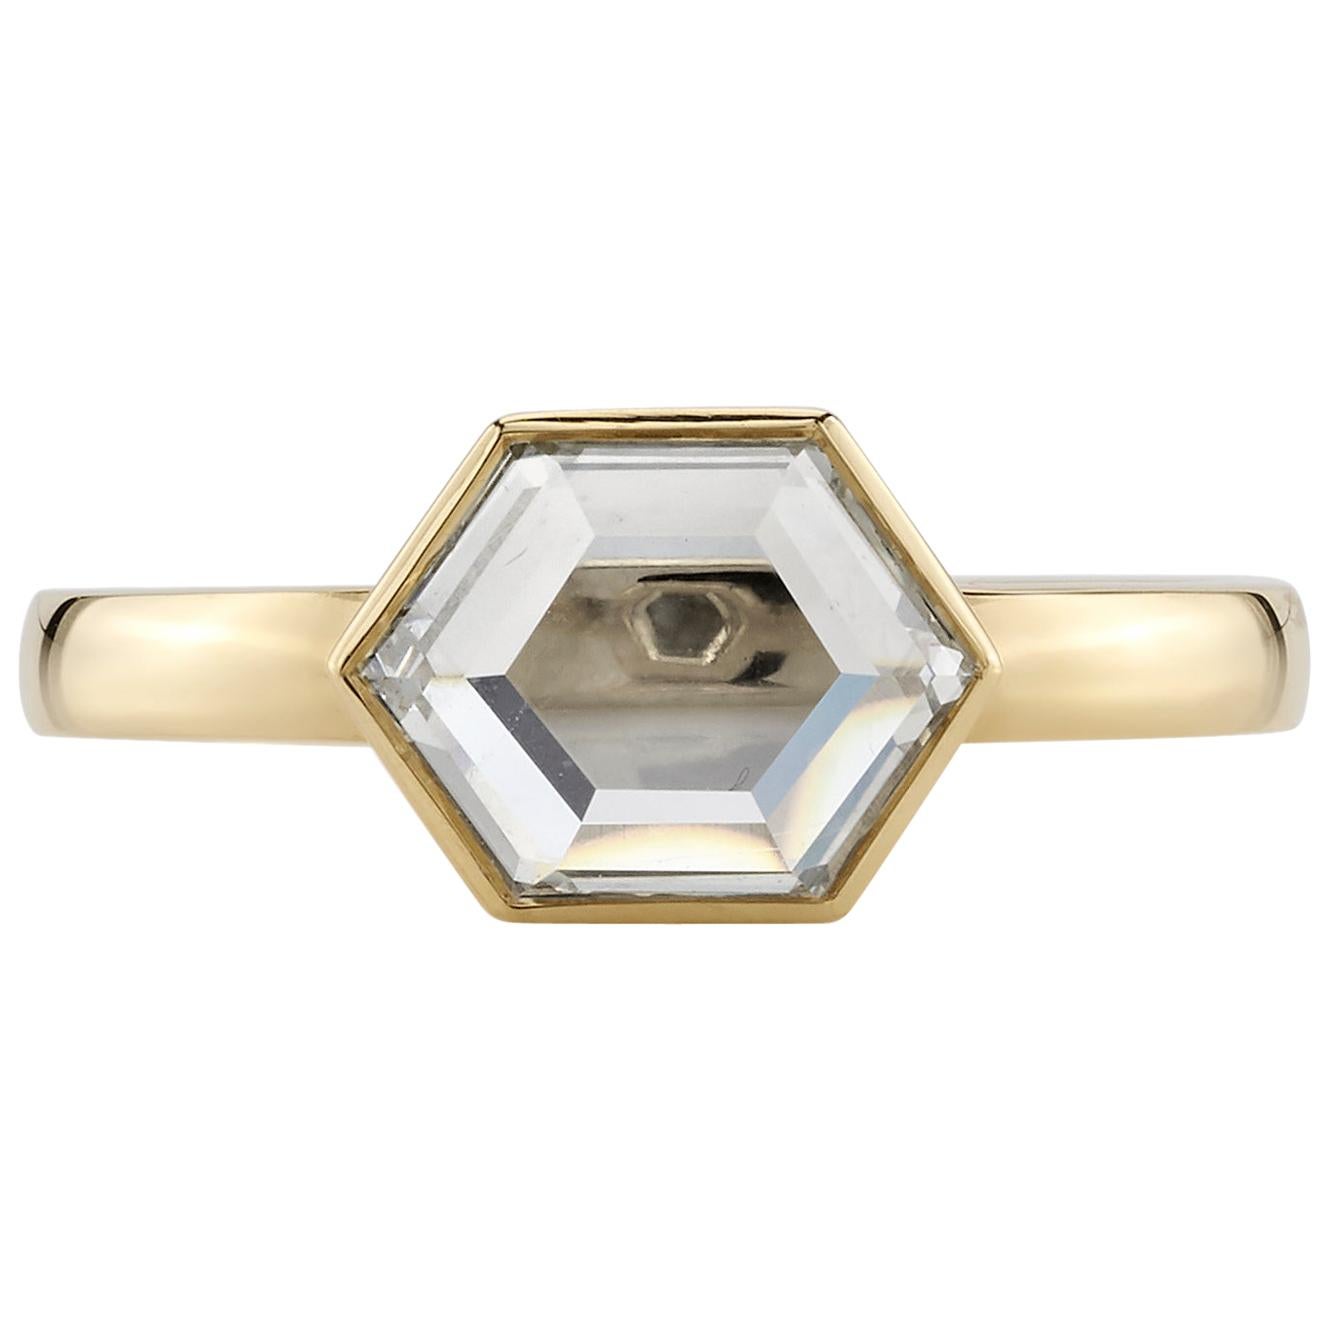 1.41 Carat GIA Certified Portrait Cut Diamond Mounted in an 18 Karat Gold Ring